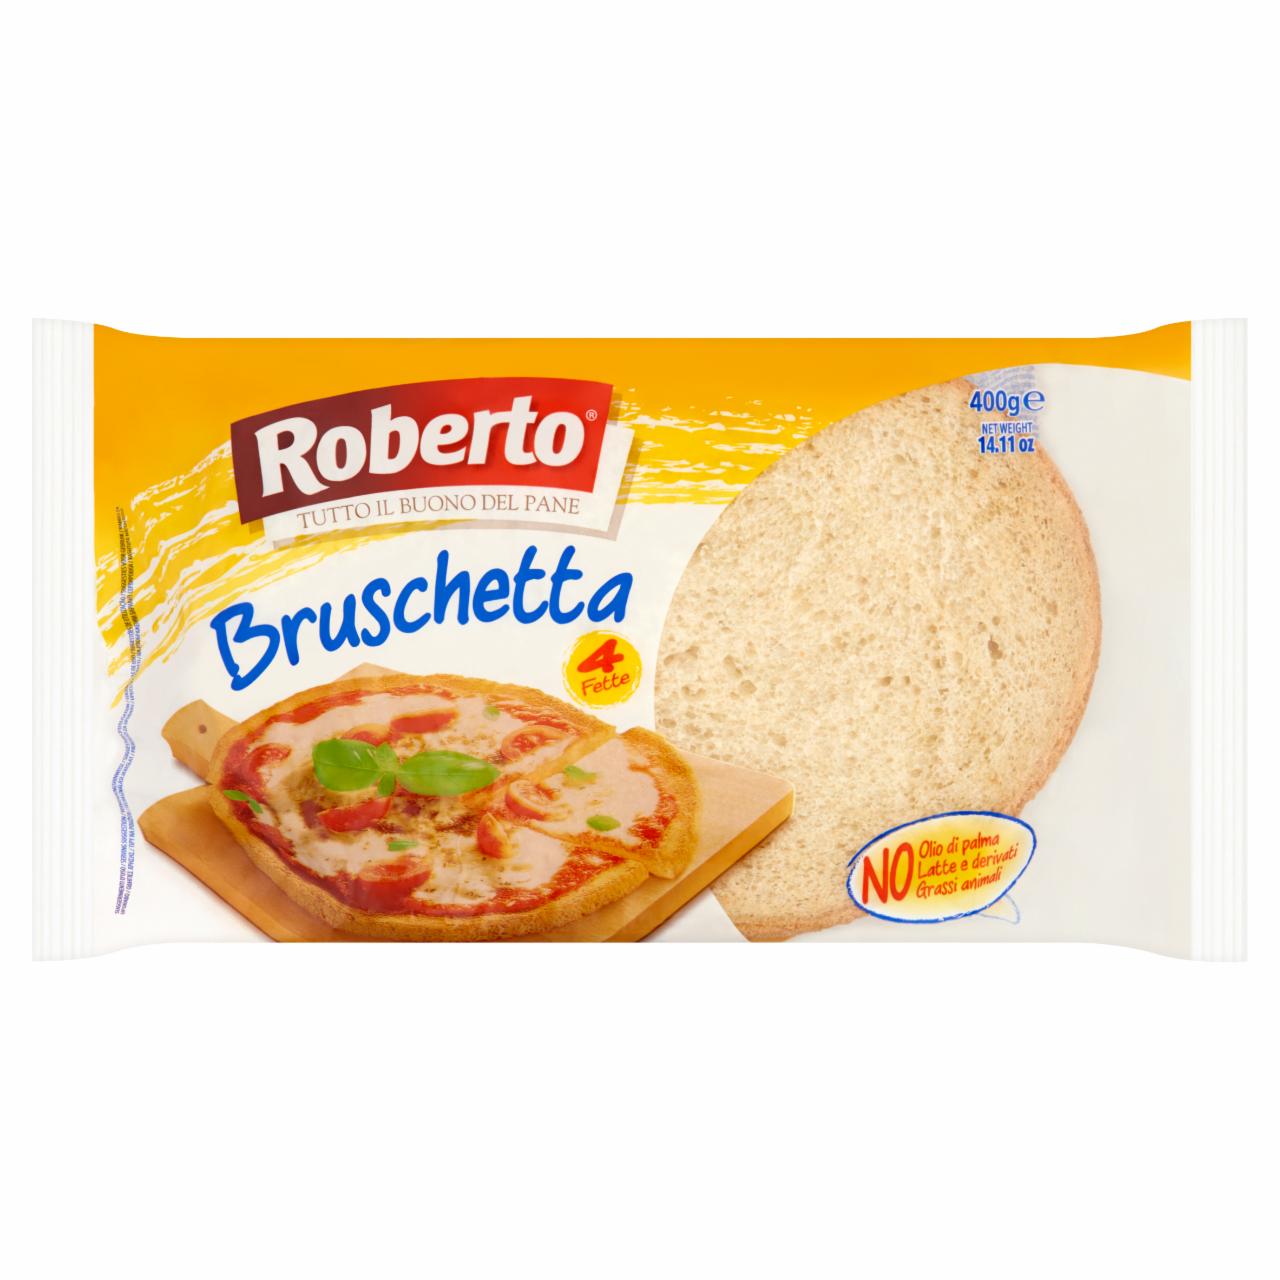 Képek - Roberto Bruschetta búzafinomlisztből készült kenyér napraforgóolajjal 400 g